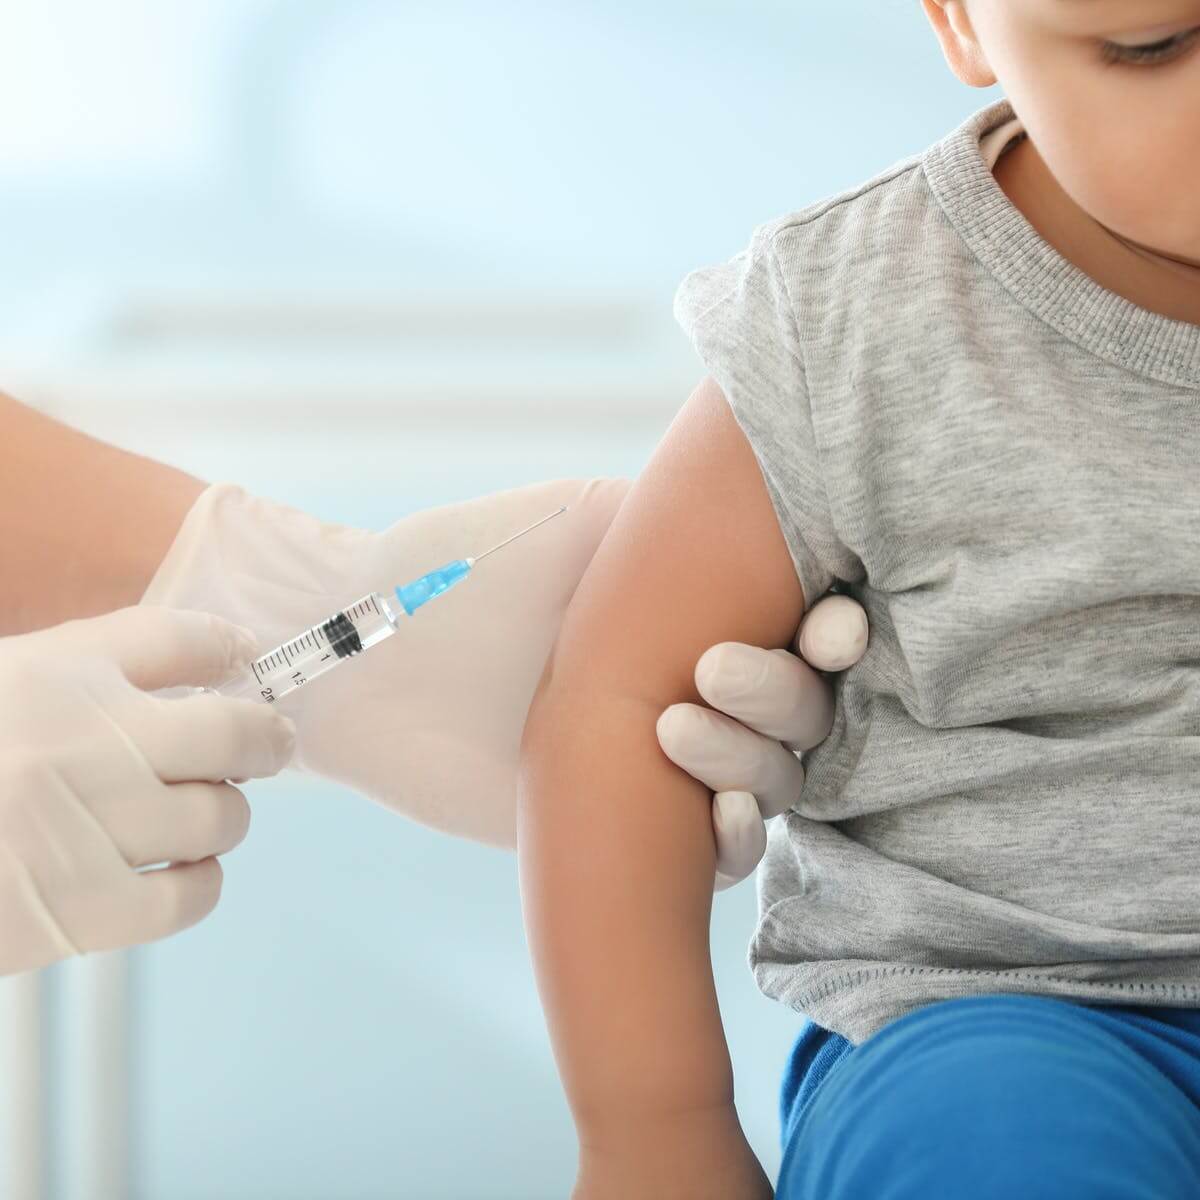 اگر قصد دریافت واکسن آنفلوآنزا دارید بخوانید